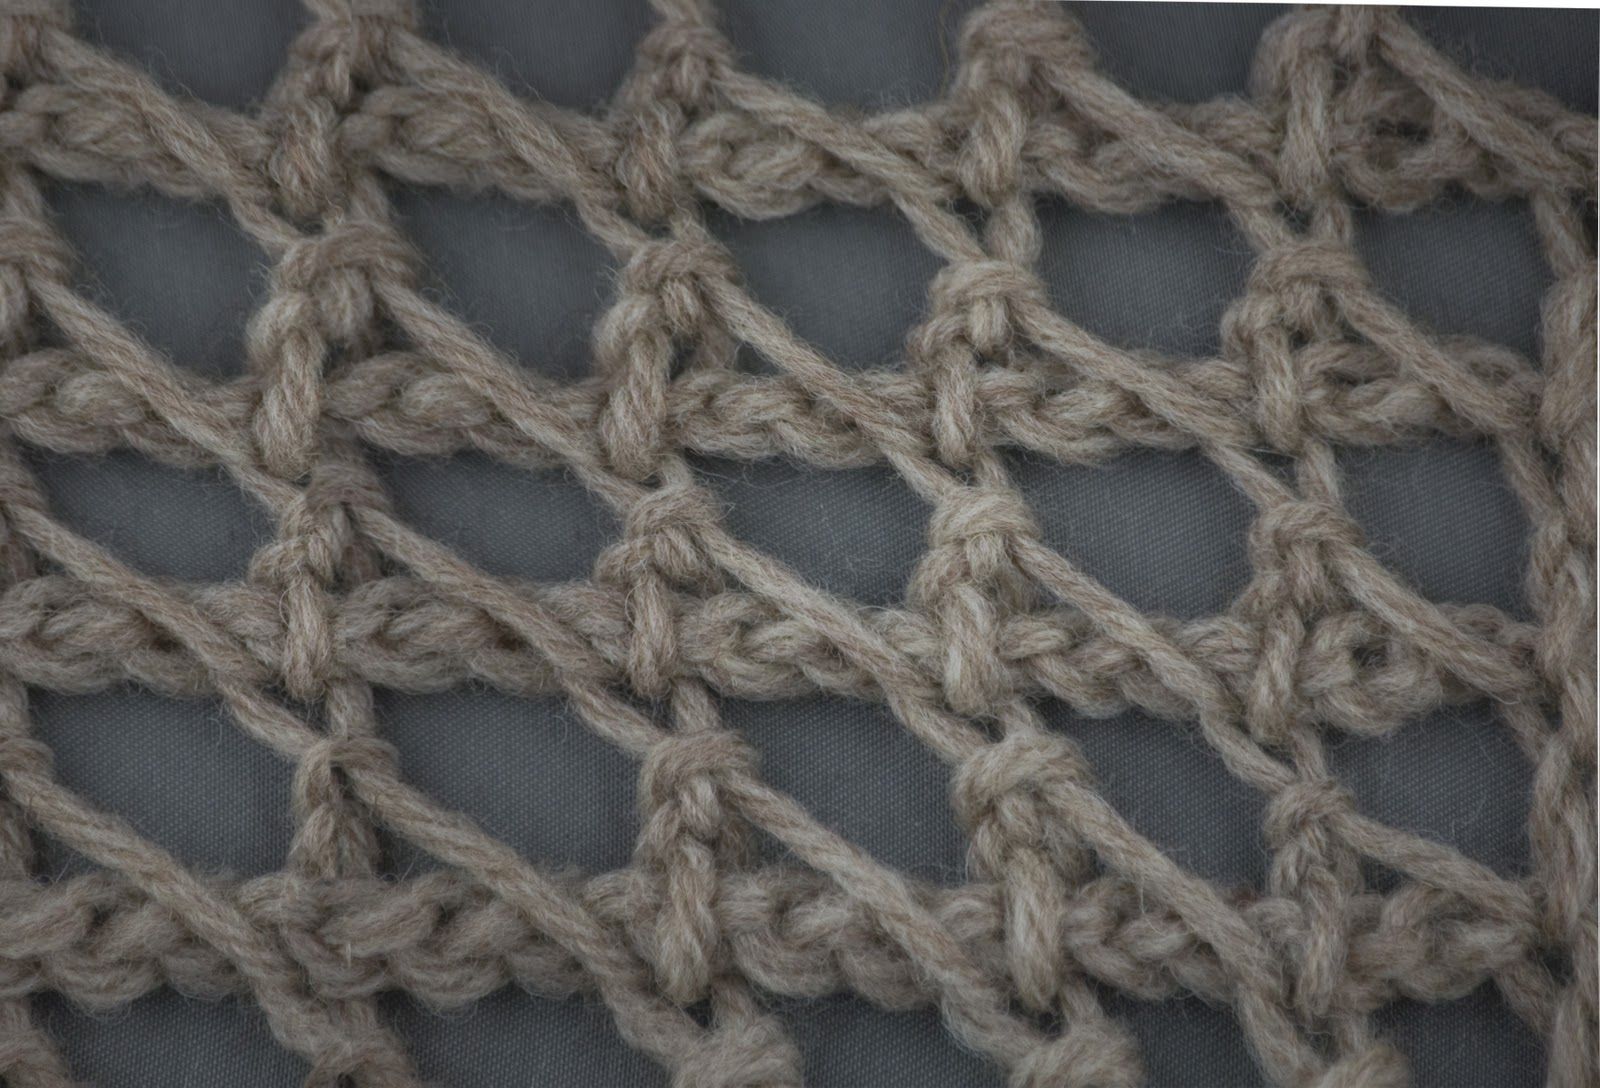 filet crochet tutorial video